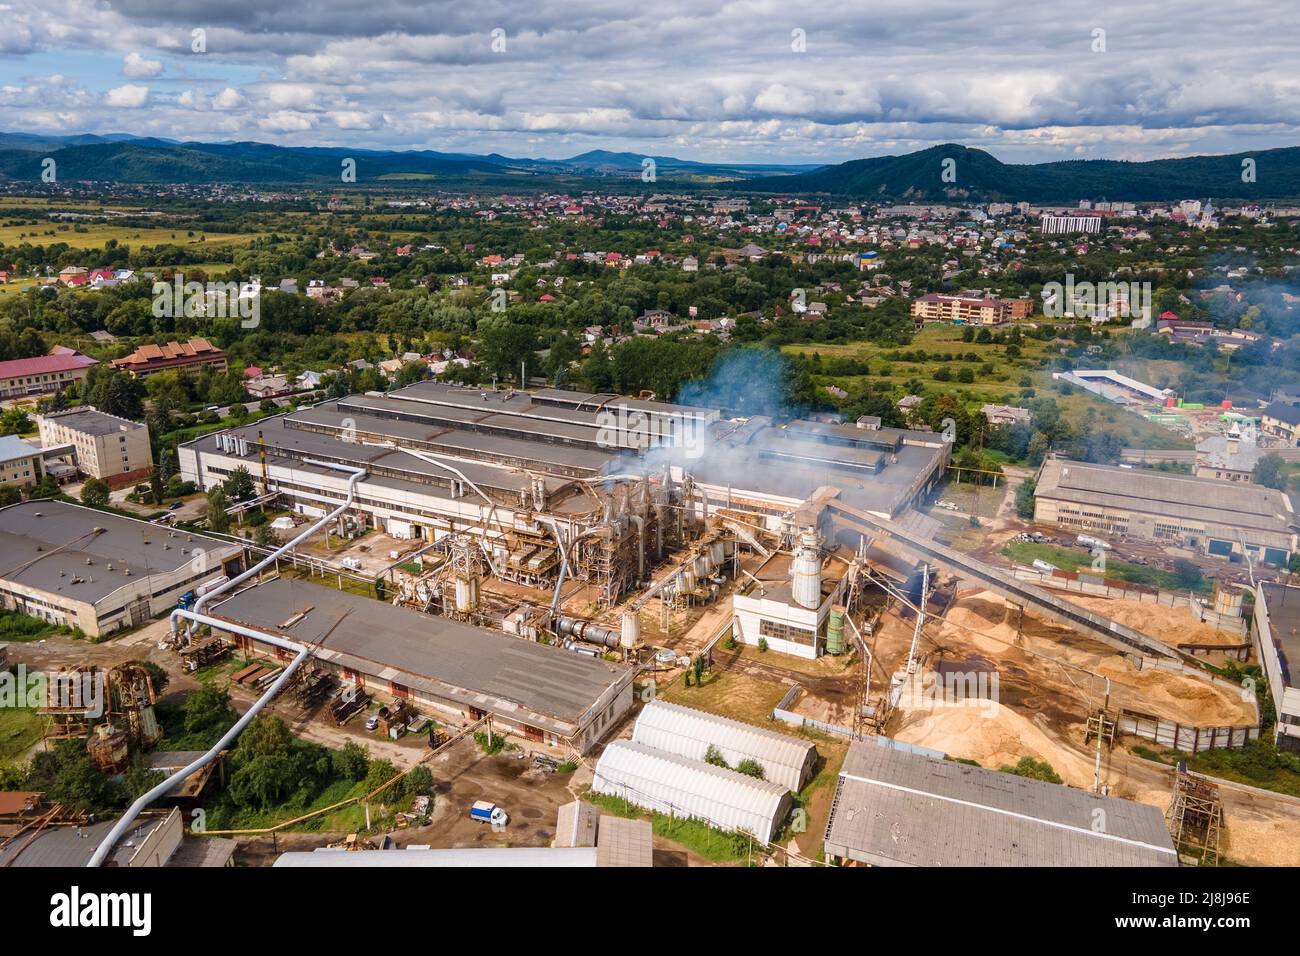 Vue aérienne de l'usine de traitement du bois avec fumkestack à partir de l'environnement polluant du procédé de production dans le chantier de fabrication en usine Banque D'Images